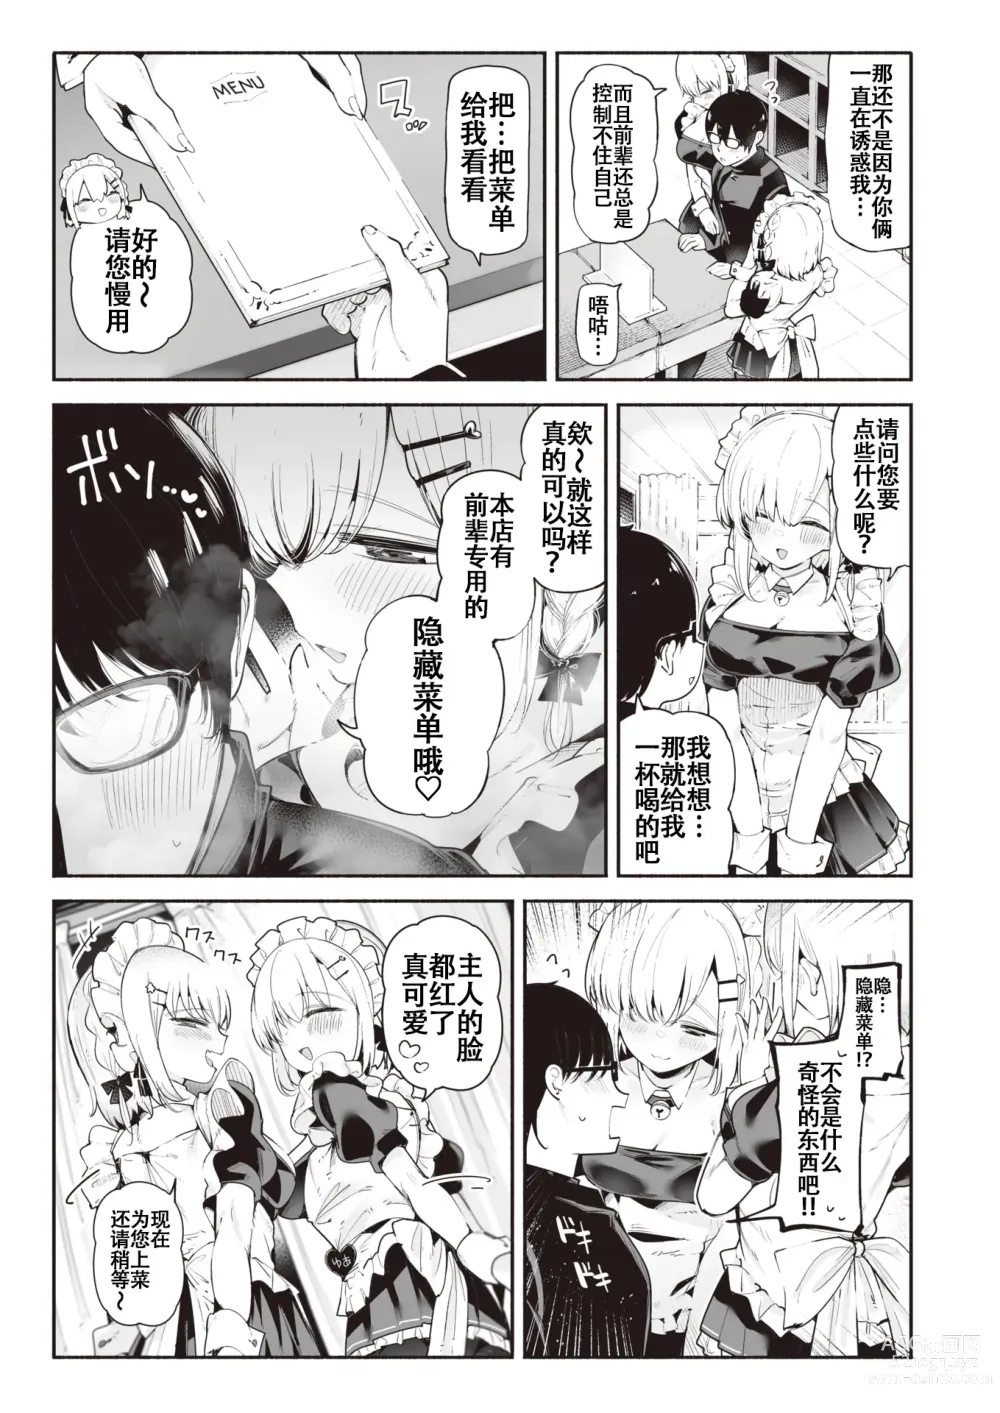 Page 3 of manga 后辈女仆之双胞胎雌小鬼